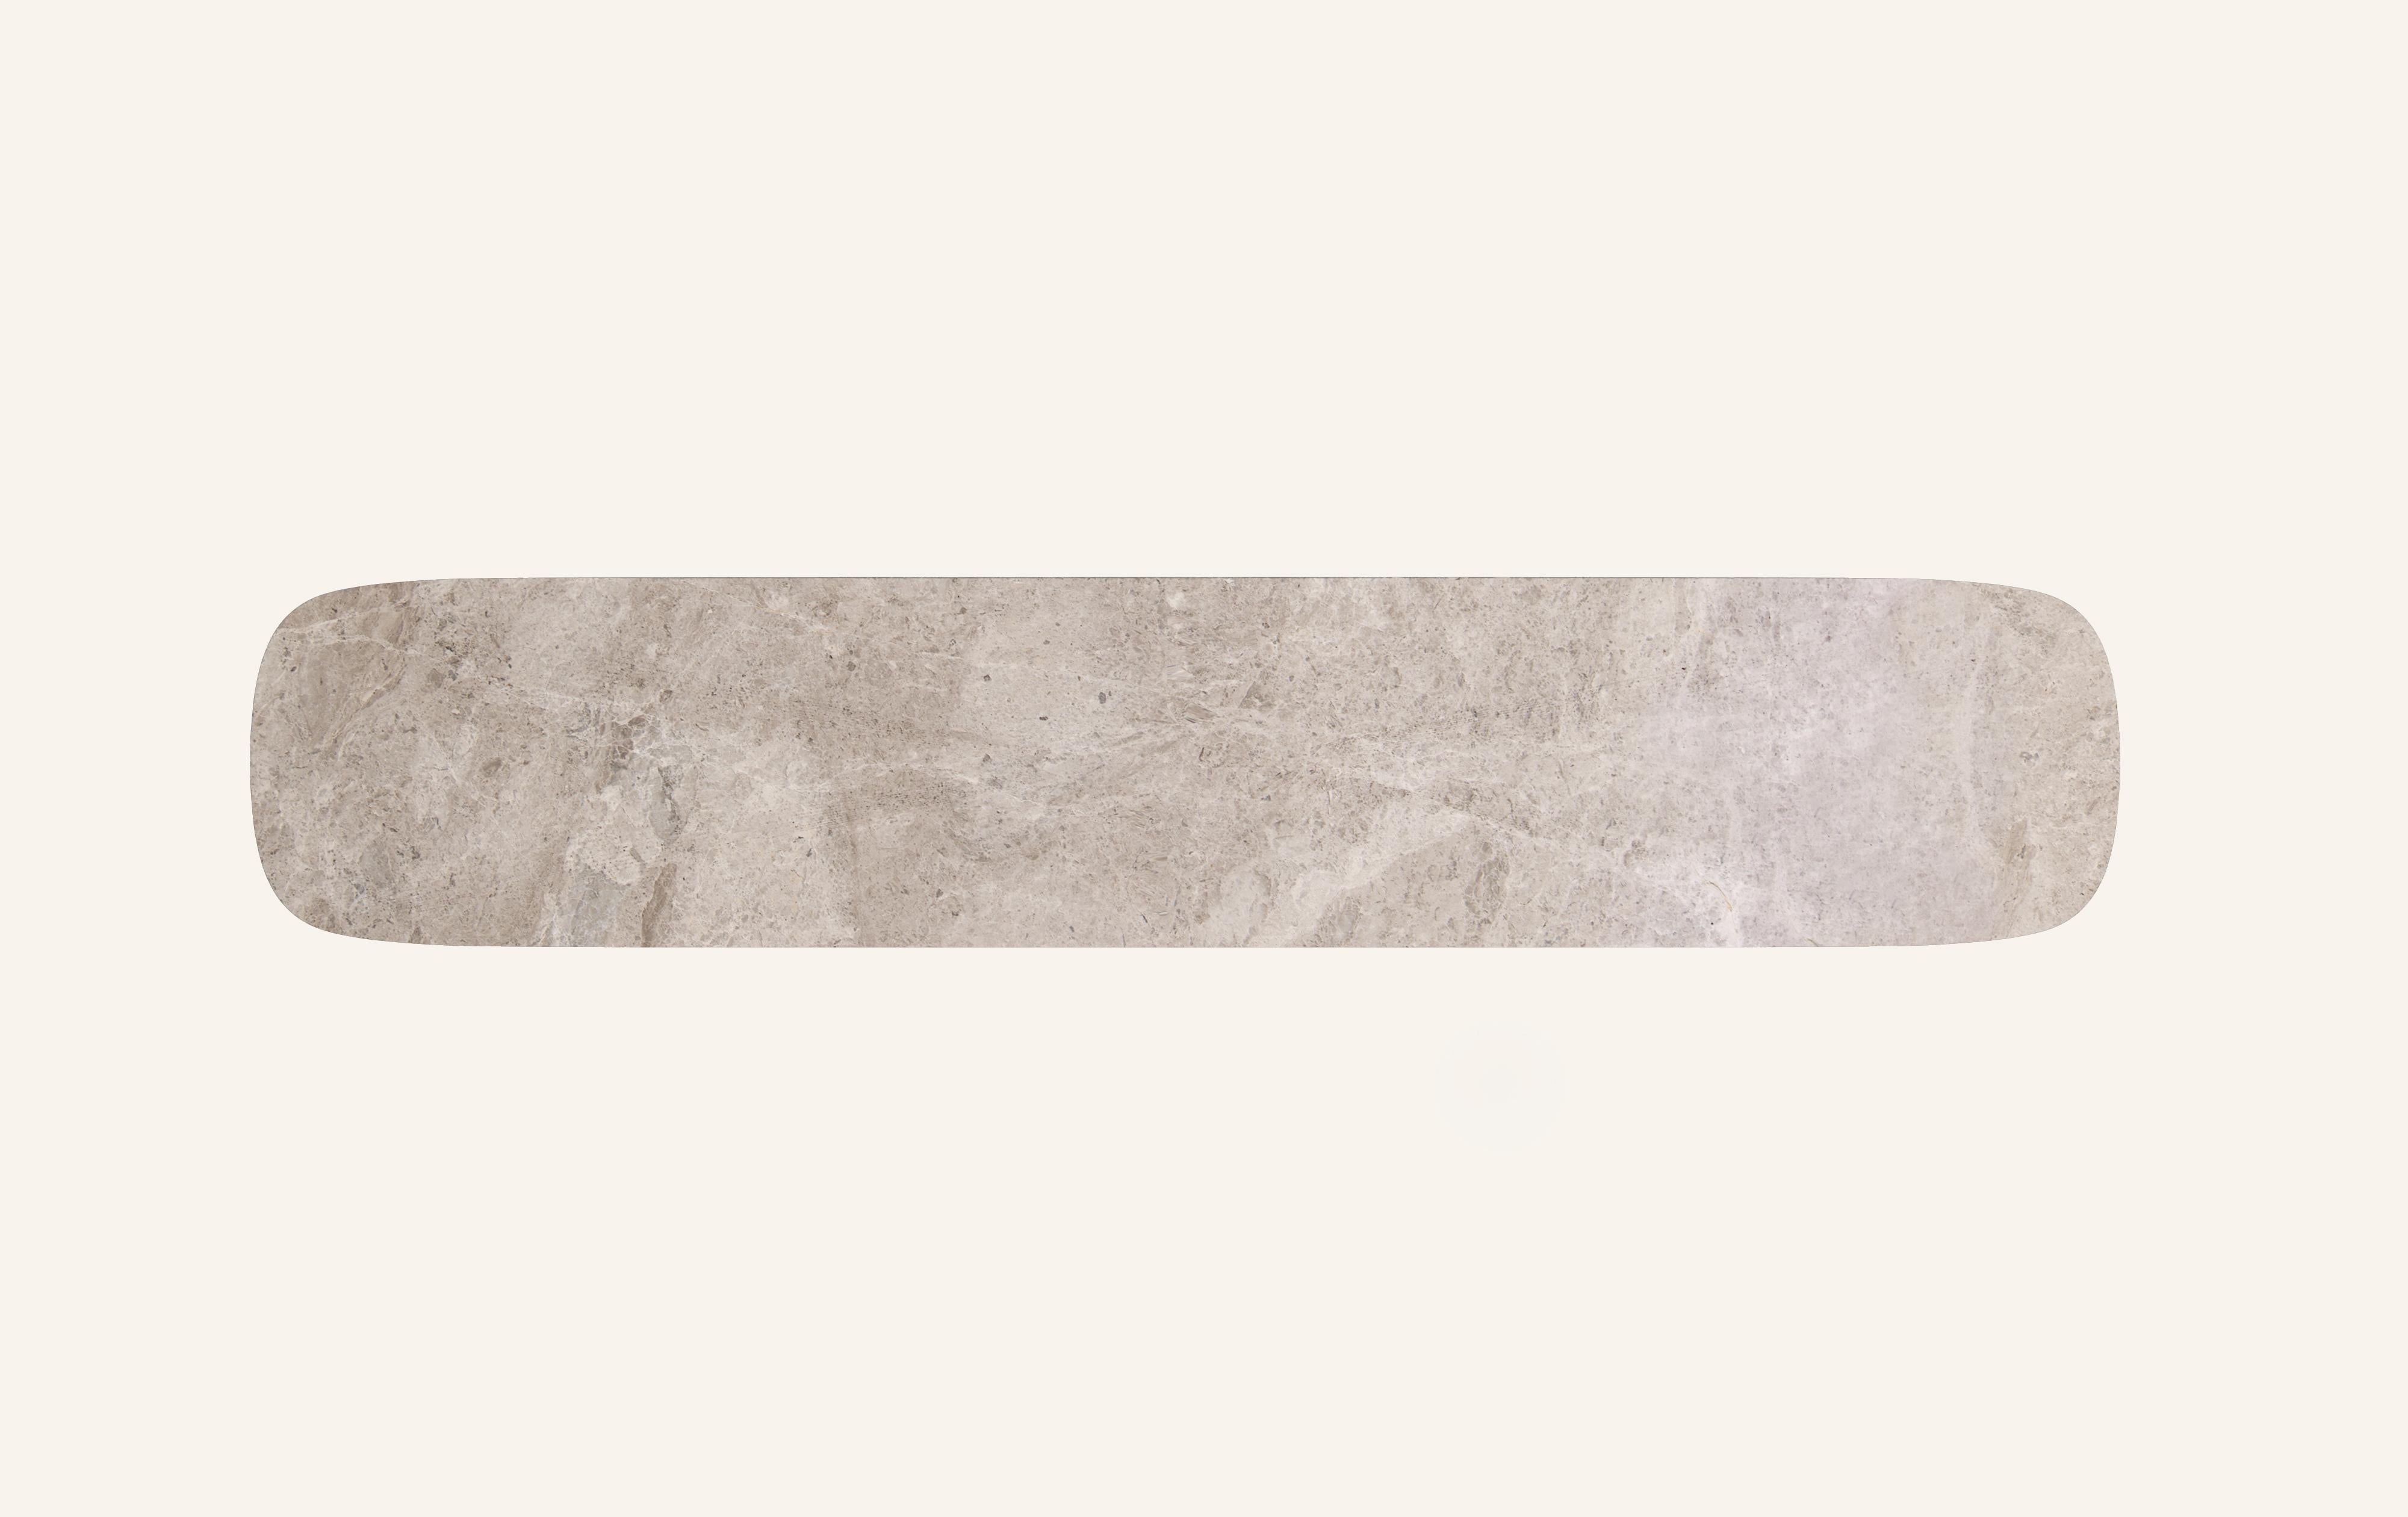 FORM(LA) Cono Console Table 84”L x 15”W x 33”H Tundra Gray Marble In New Condition For Sale In Los Angeles, CA